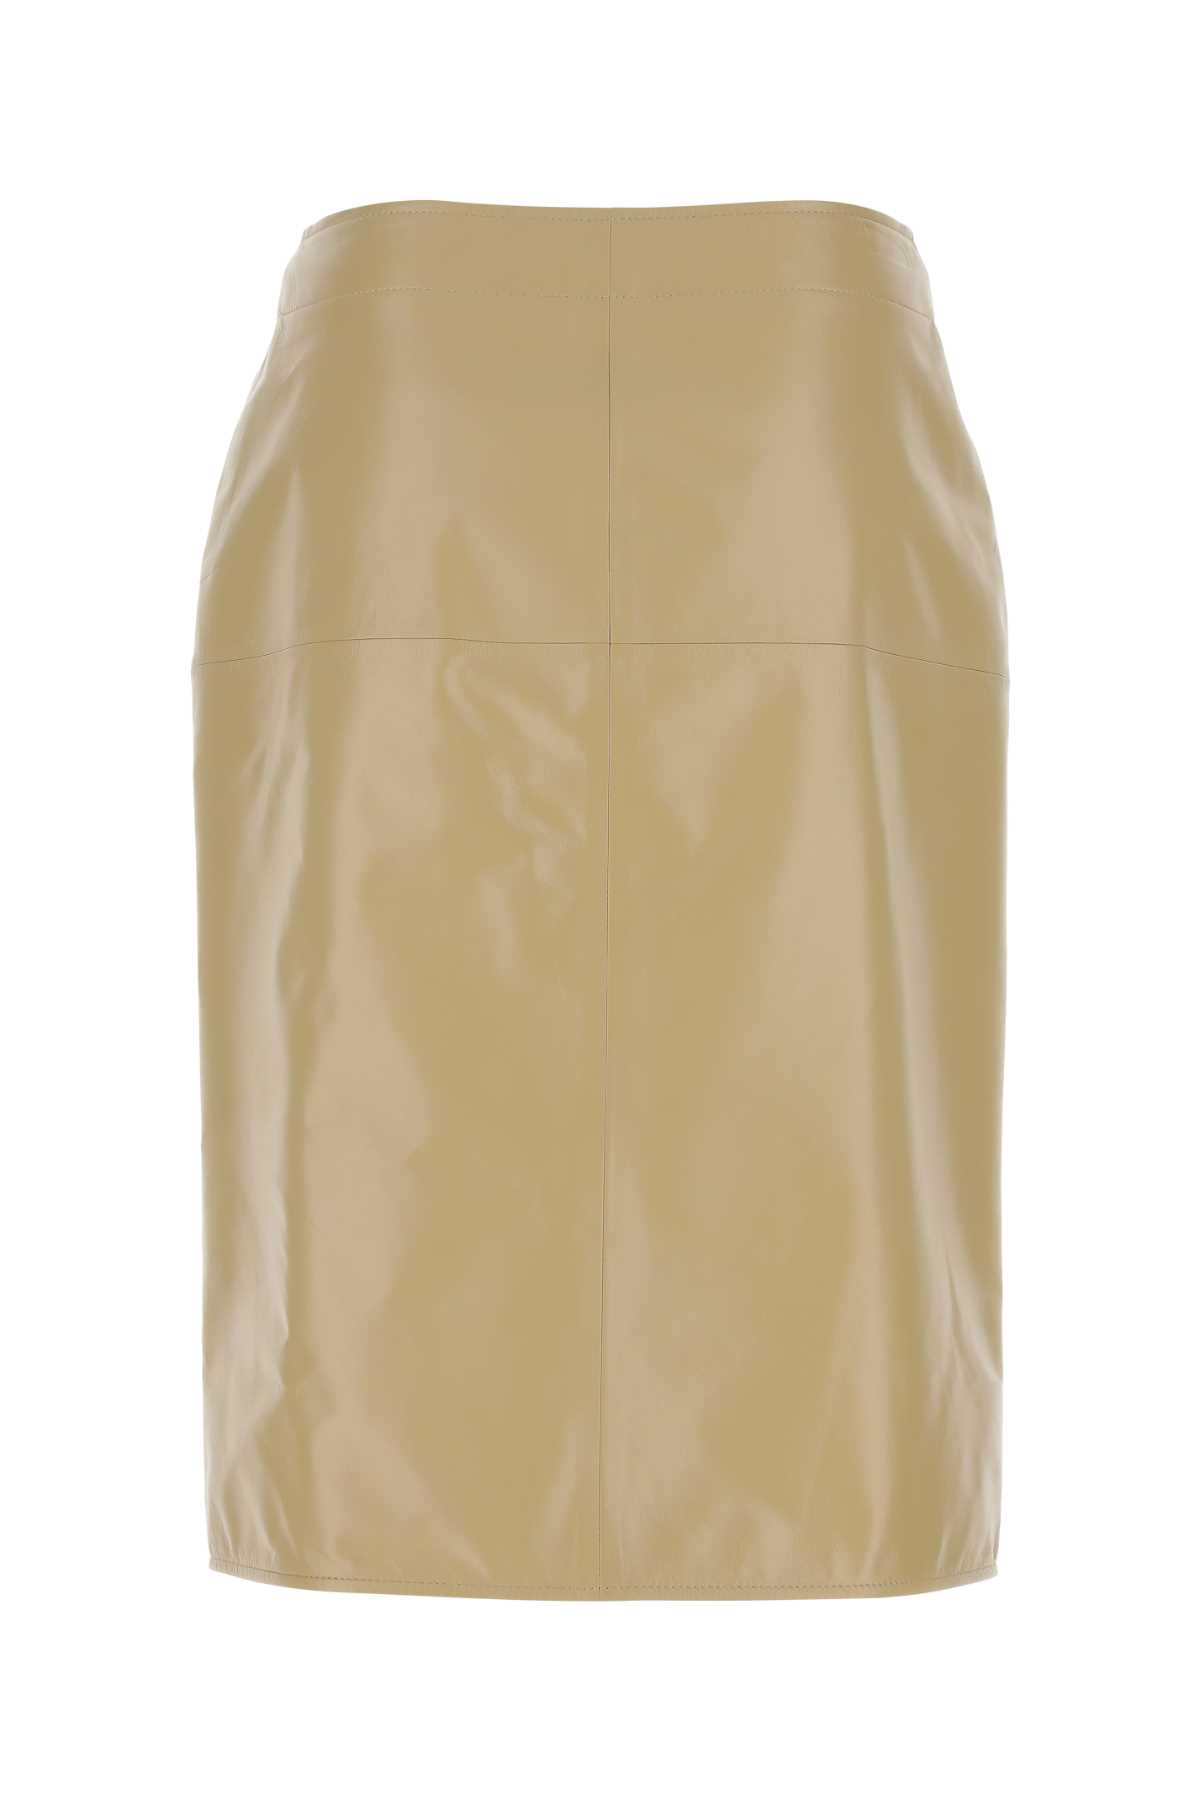 Bottega Veneta Beige Leather Skirt In 9640